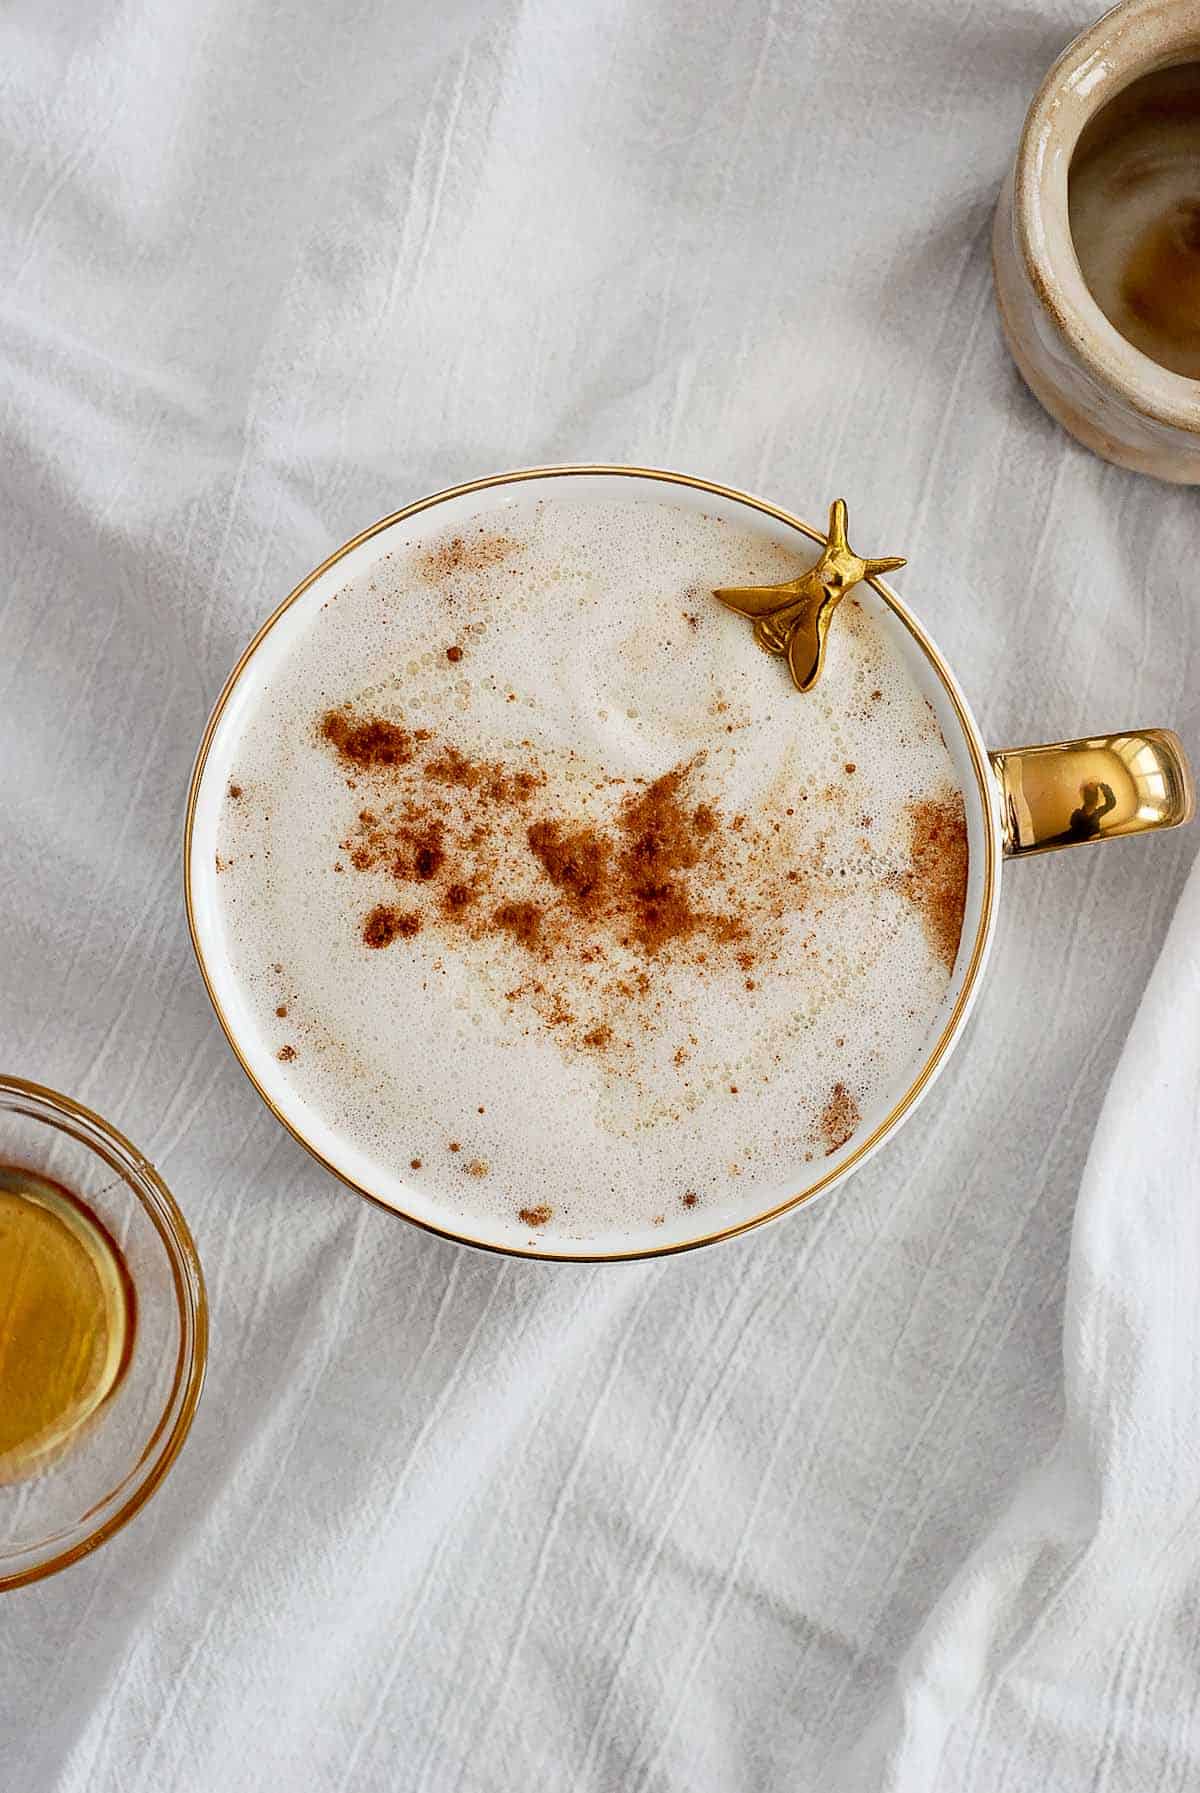 honey oatmilk latte in mug with spoon peeking out.